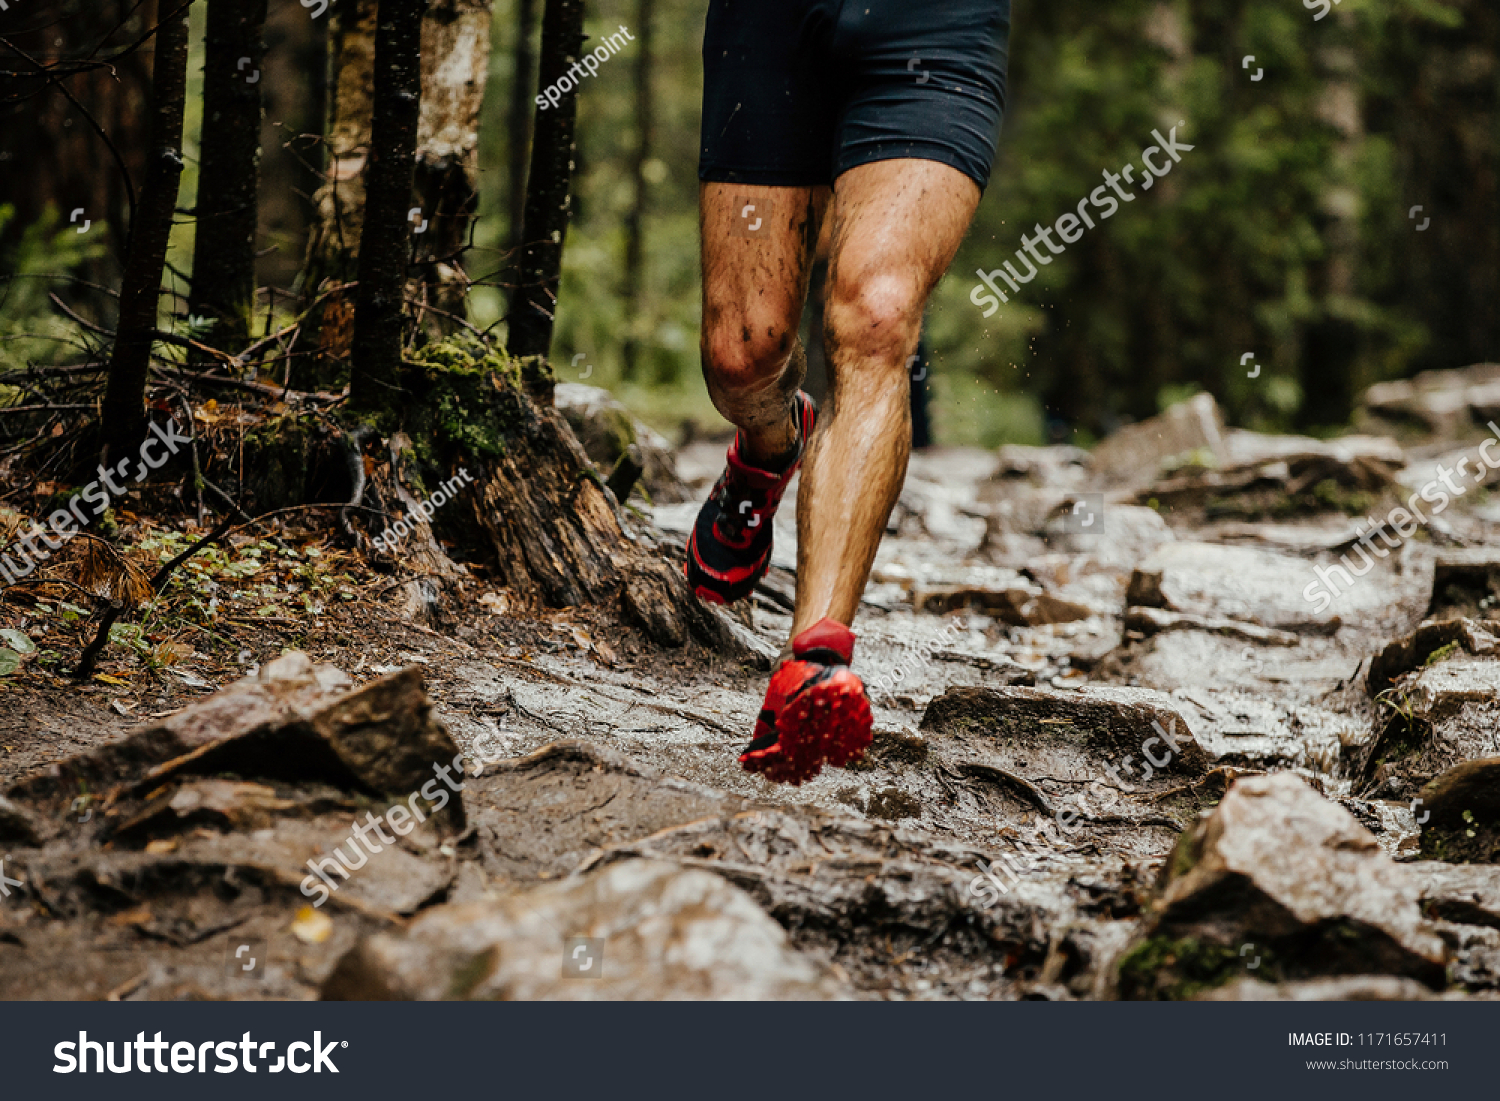 wet feet runner athlete running on trail stones in forest #1171657411